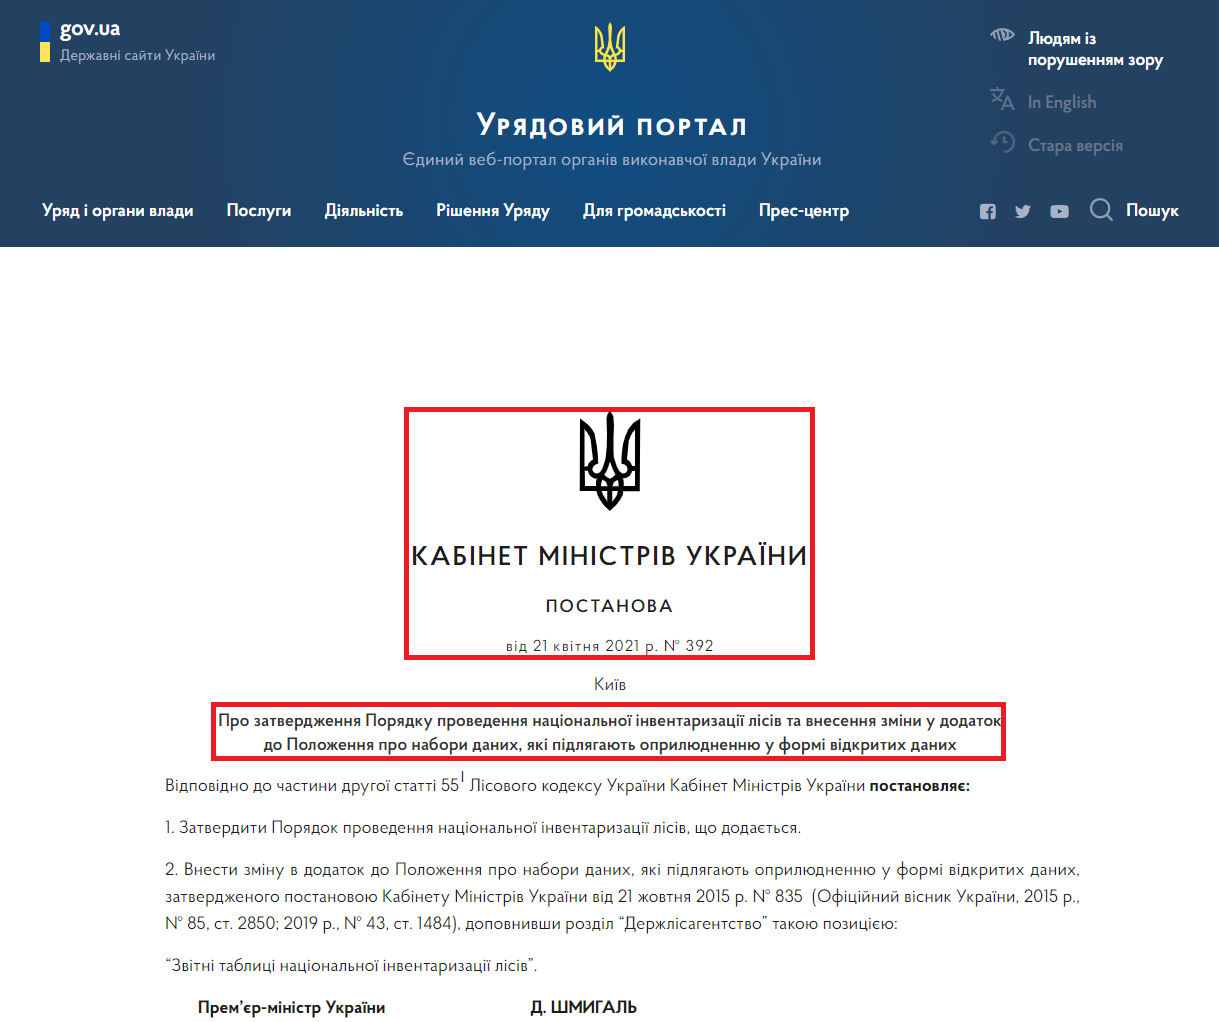 https://www.kmu.gov.ua/npas/pro-zatverdzhennya-poryadku-provedennya-nacionalnoyi-inventarizaciyi-lisiv-ta-vnesennya-zmini-392-210421